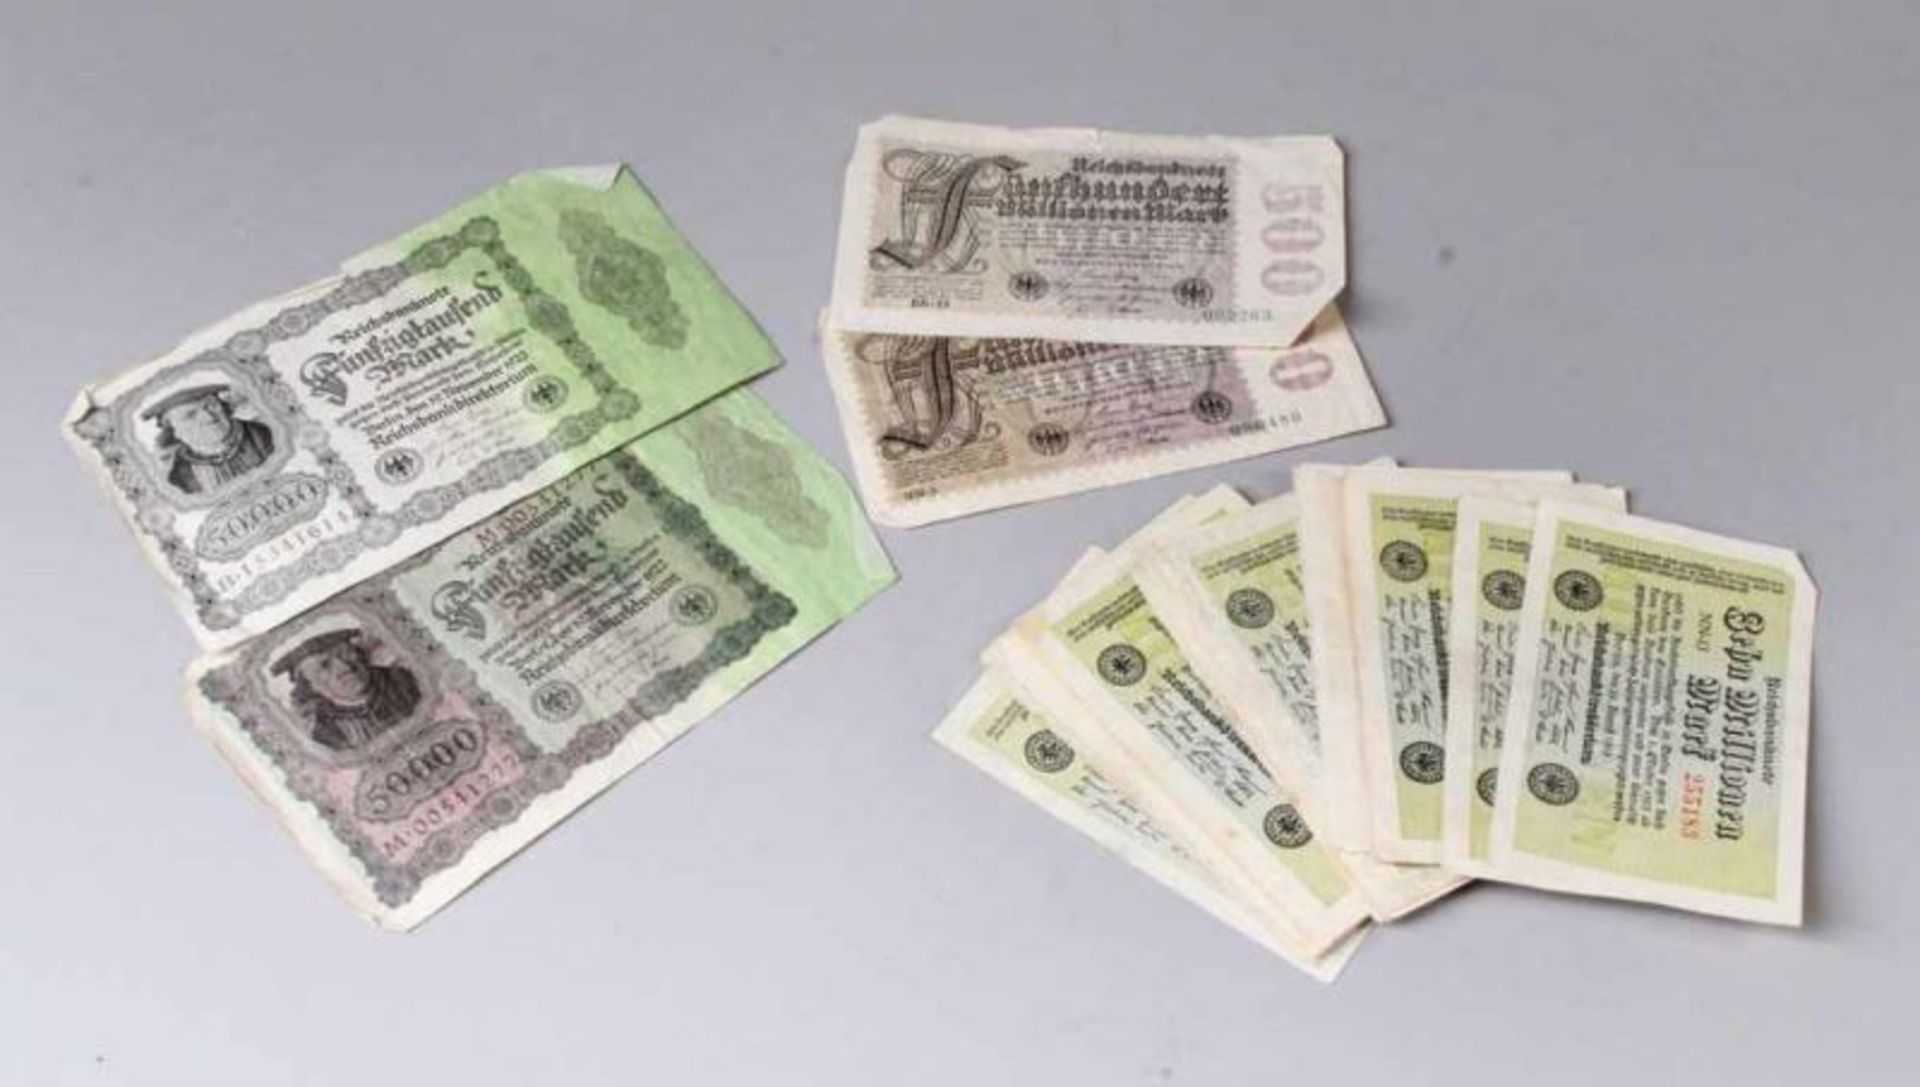 Konvolut Reichsbanknoten.Bestehend aus ca. 35 x 10 Millionen Mark, Berlin 22. Aug 1923, 2 x 50.000